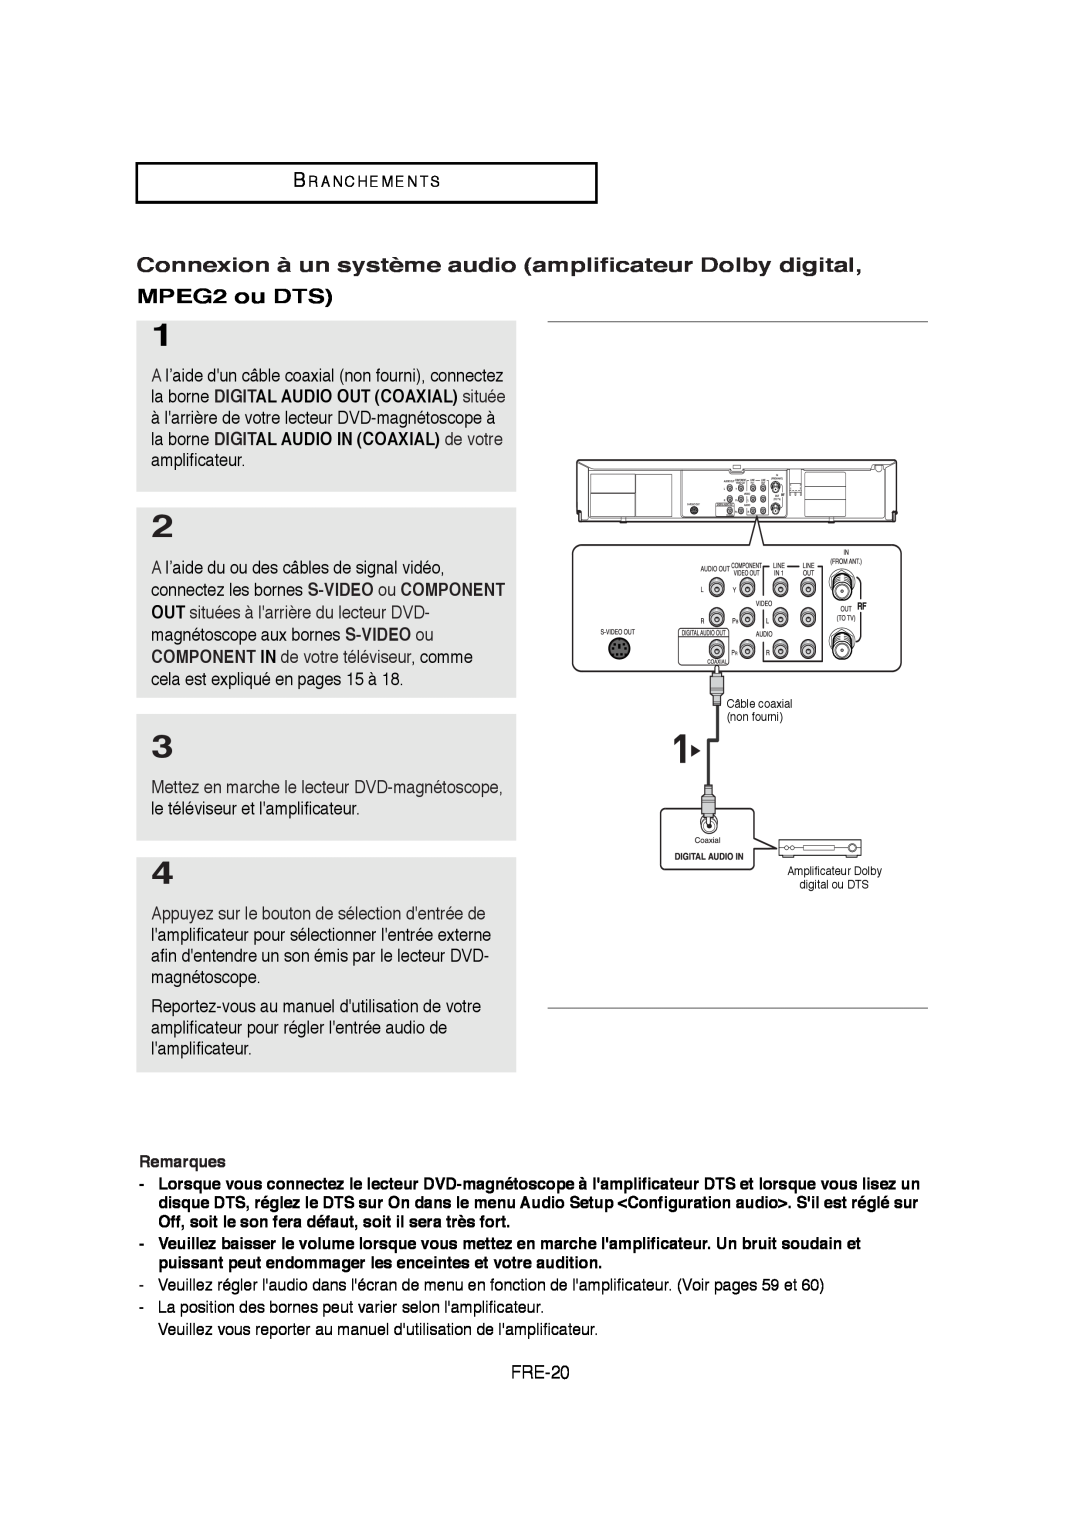 Samsung V6700-XAC, AK68-01304A Connexion à un système audio amplificateur Dolby digital, MPEG2 ou DTS, FRE-20 